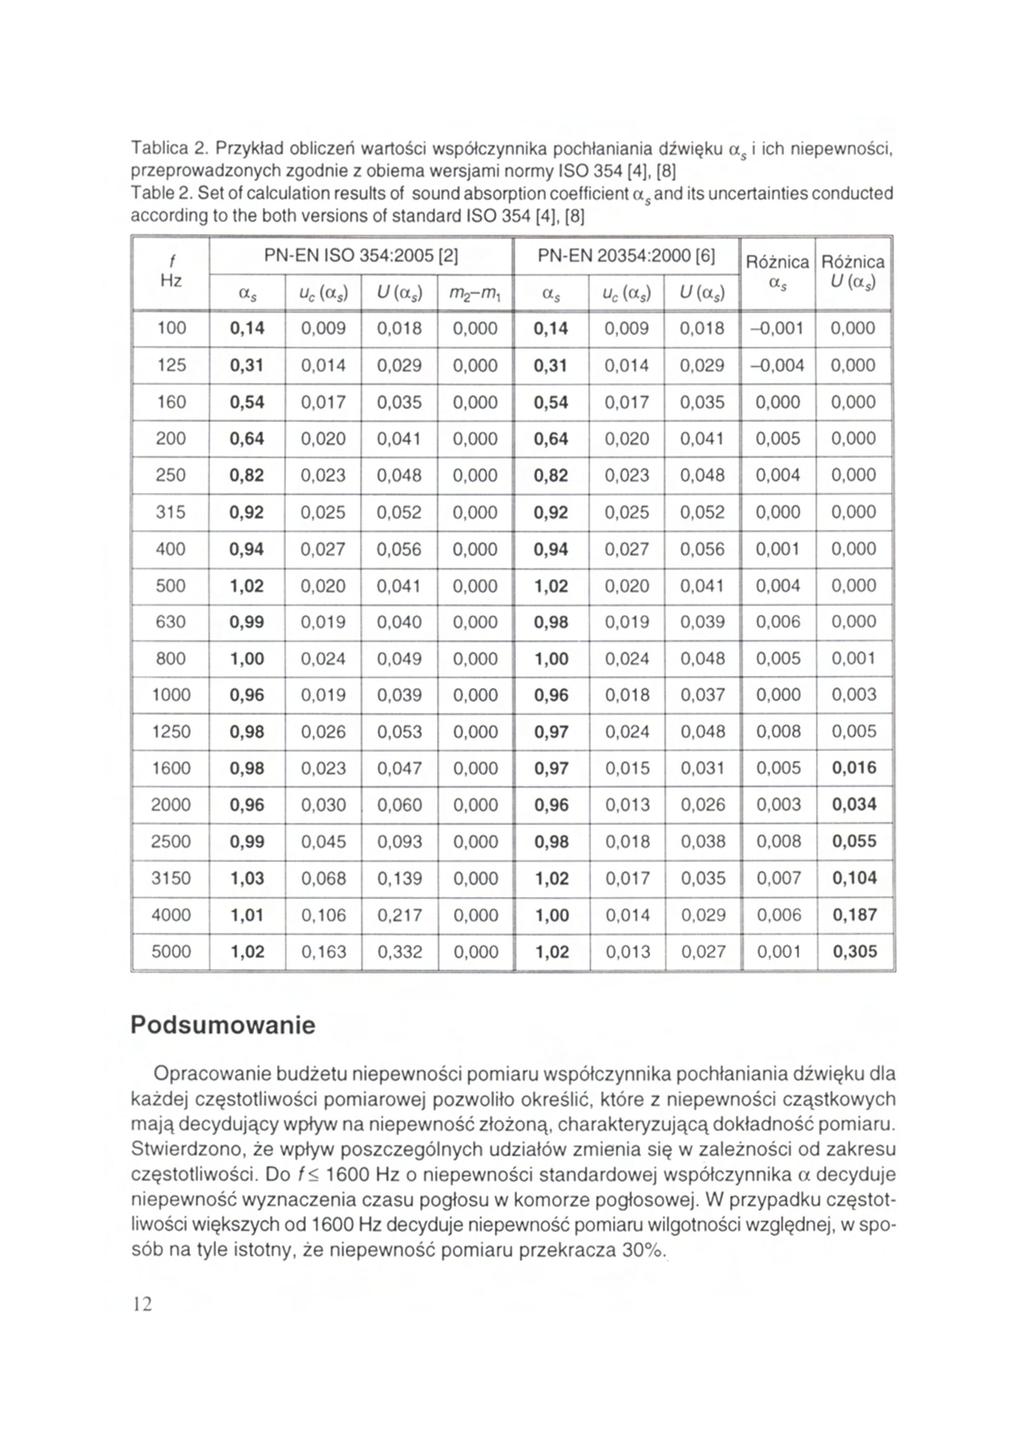 Tablica 2. Przykład obliczeń wartości współczynnika pochłaniania dźwięku i ich niepewności, przeprowadzonych zgodnie z obiema wersjami normy ISO 354 [4], [8] Table 2.